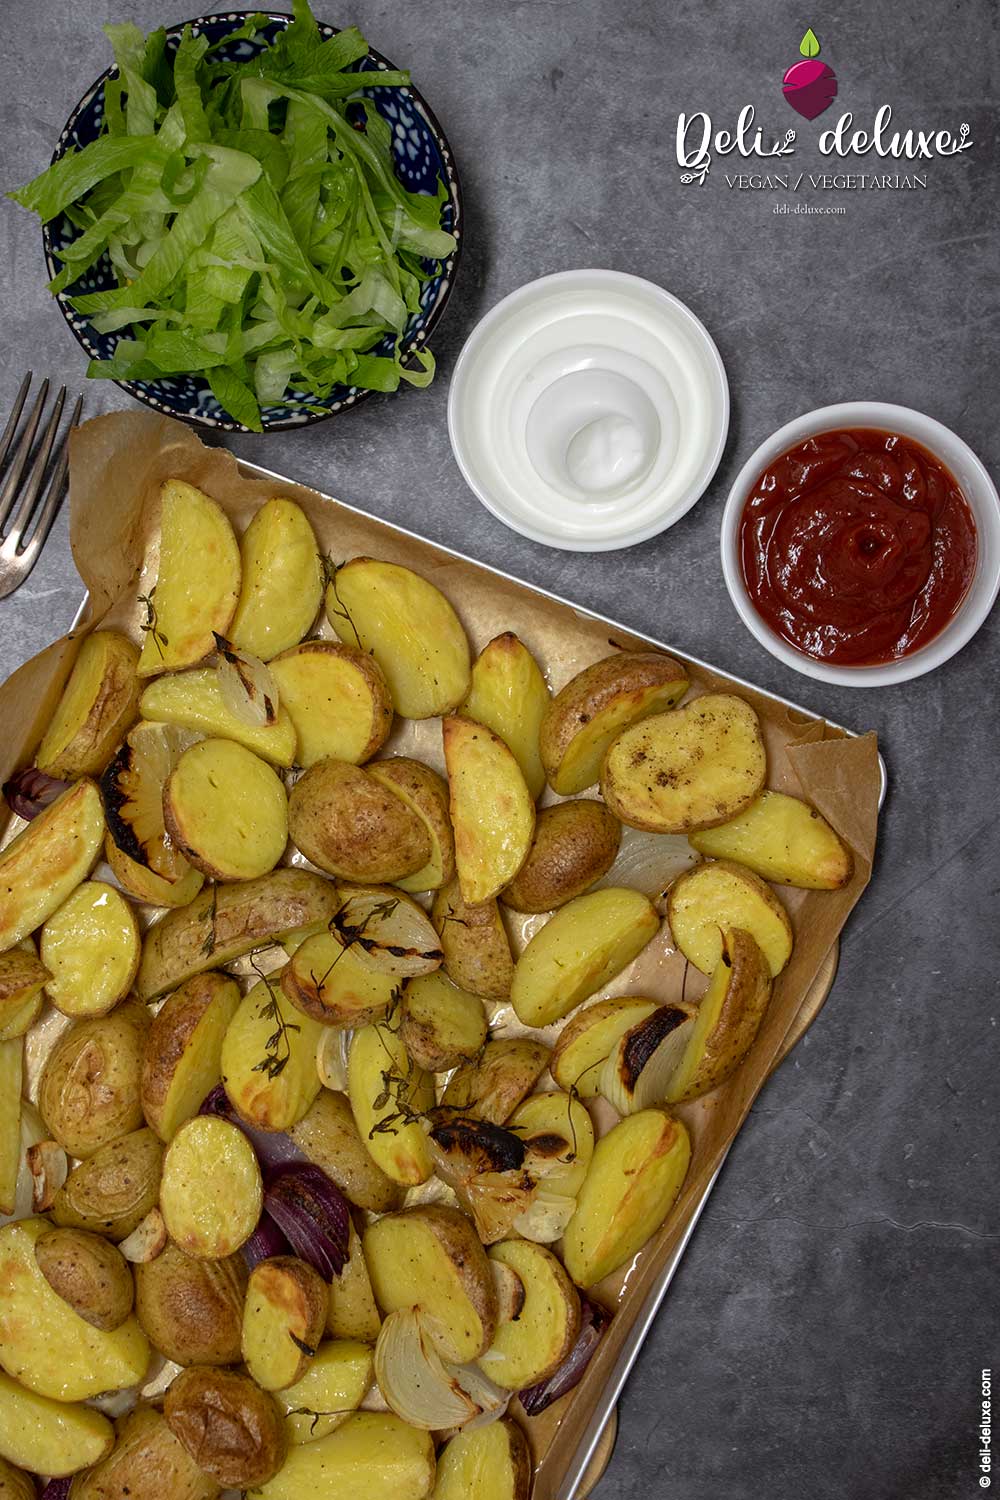 Gönn Dir selbstgemachte Kartoffelwedges – So wird’s gemacht!